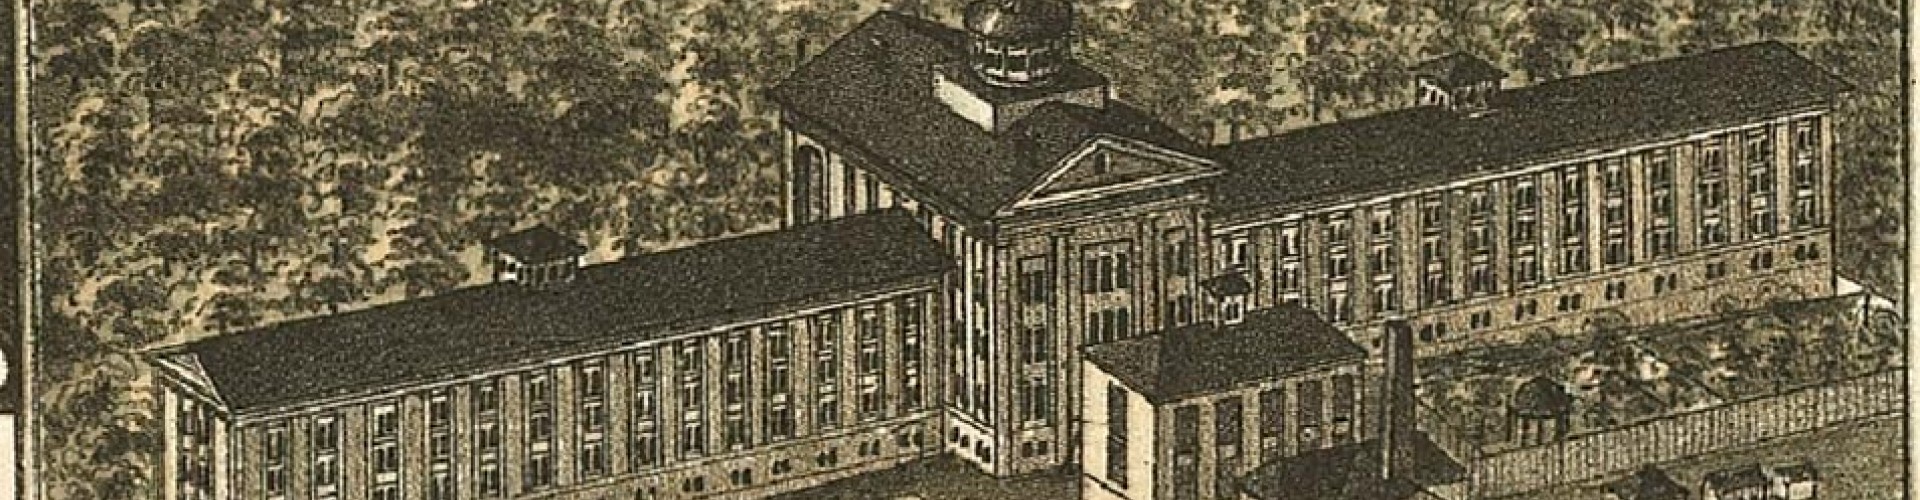 1879 sketch of the original Dix hospital called a lunatic asylum